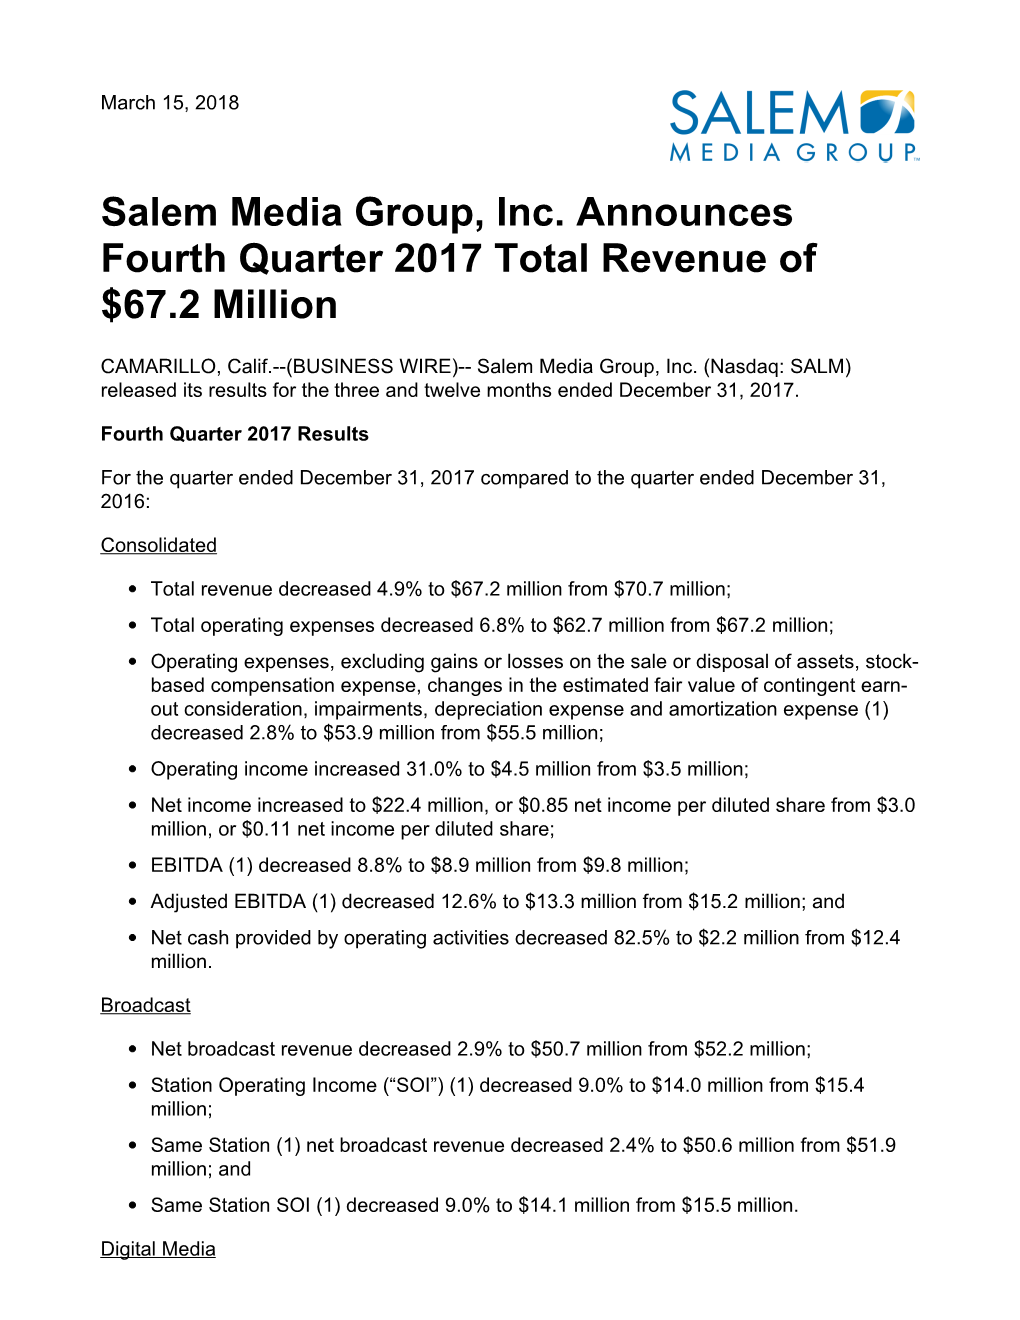 Salem Media Group, Inc. Announces Fourth Quarter 2017 Total Revenue of $67.2 Million